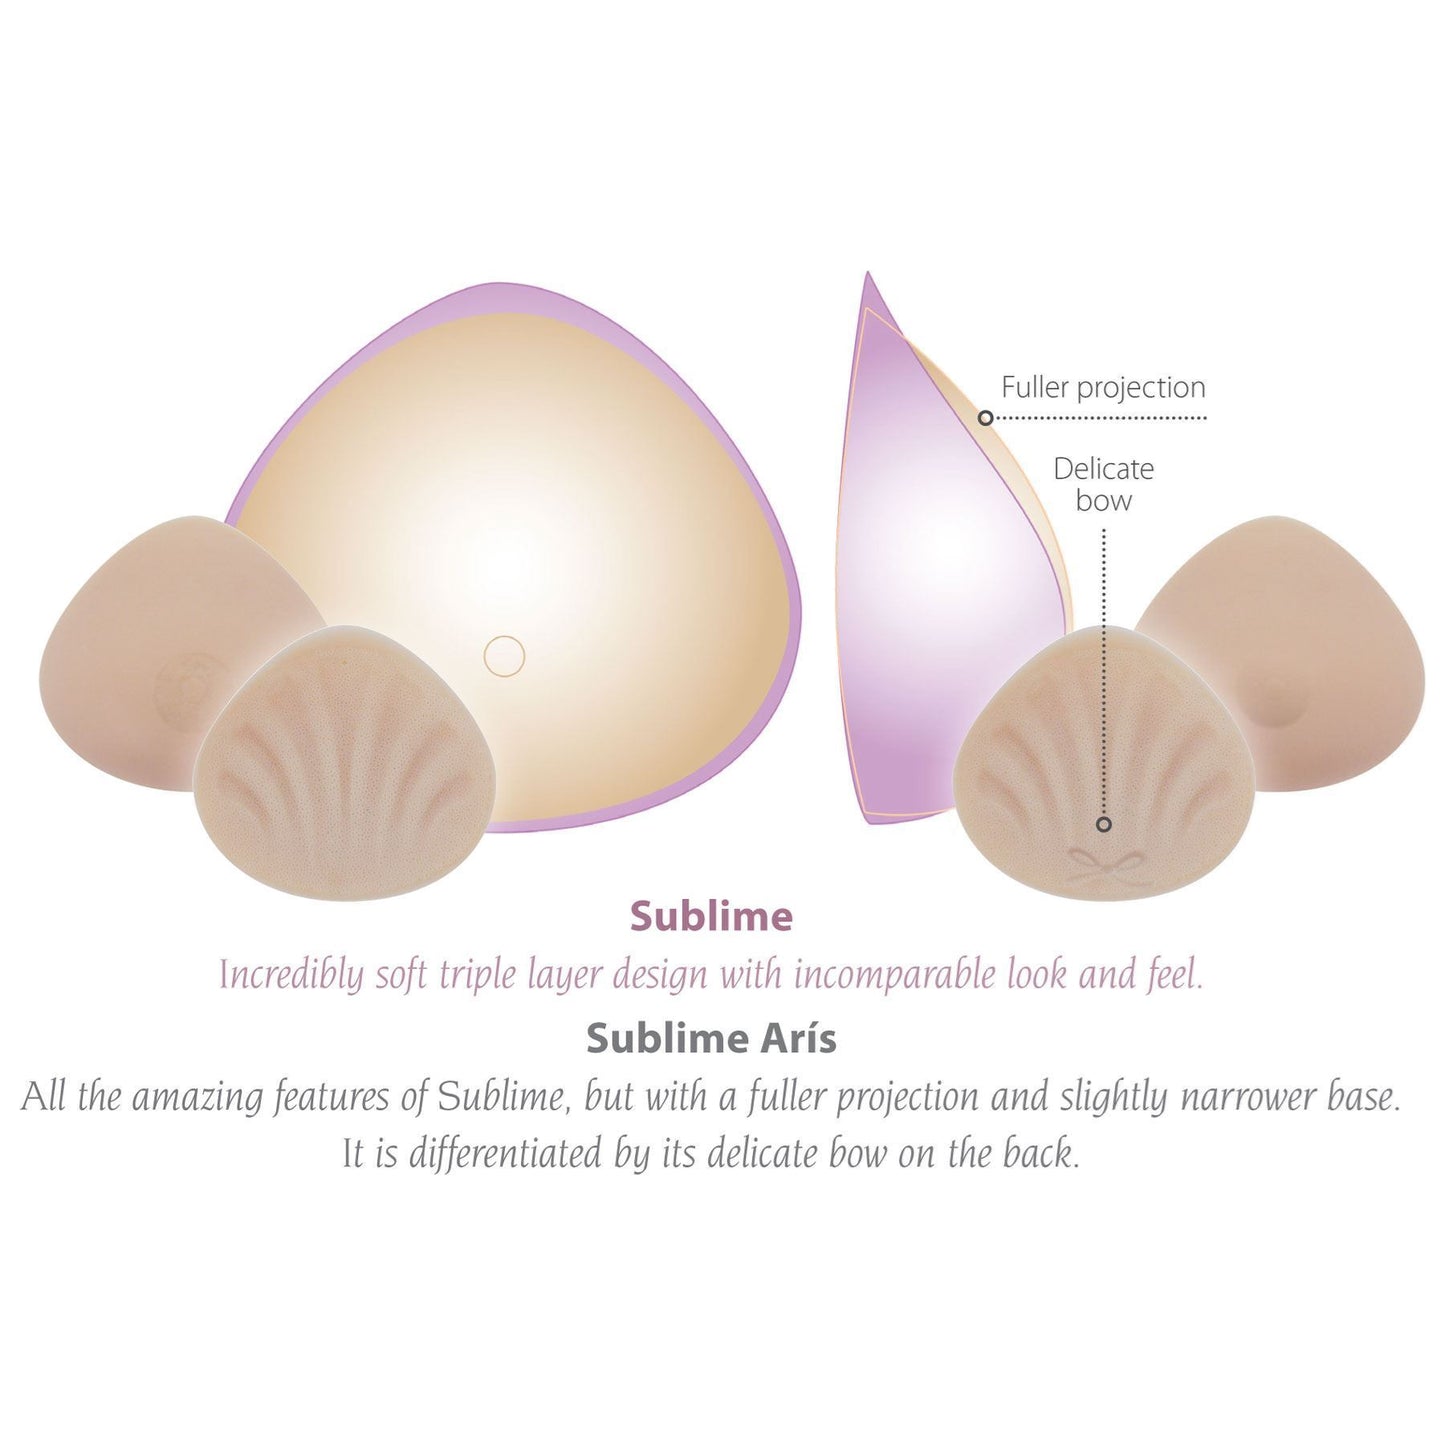 EXQUISITE BODIES Breast Form - Sublime Aris 151